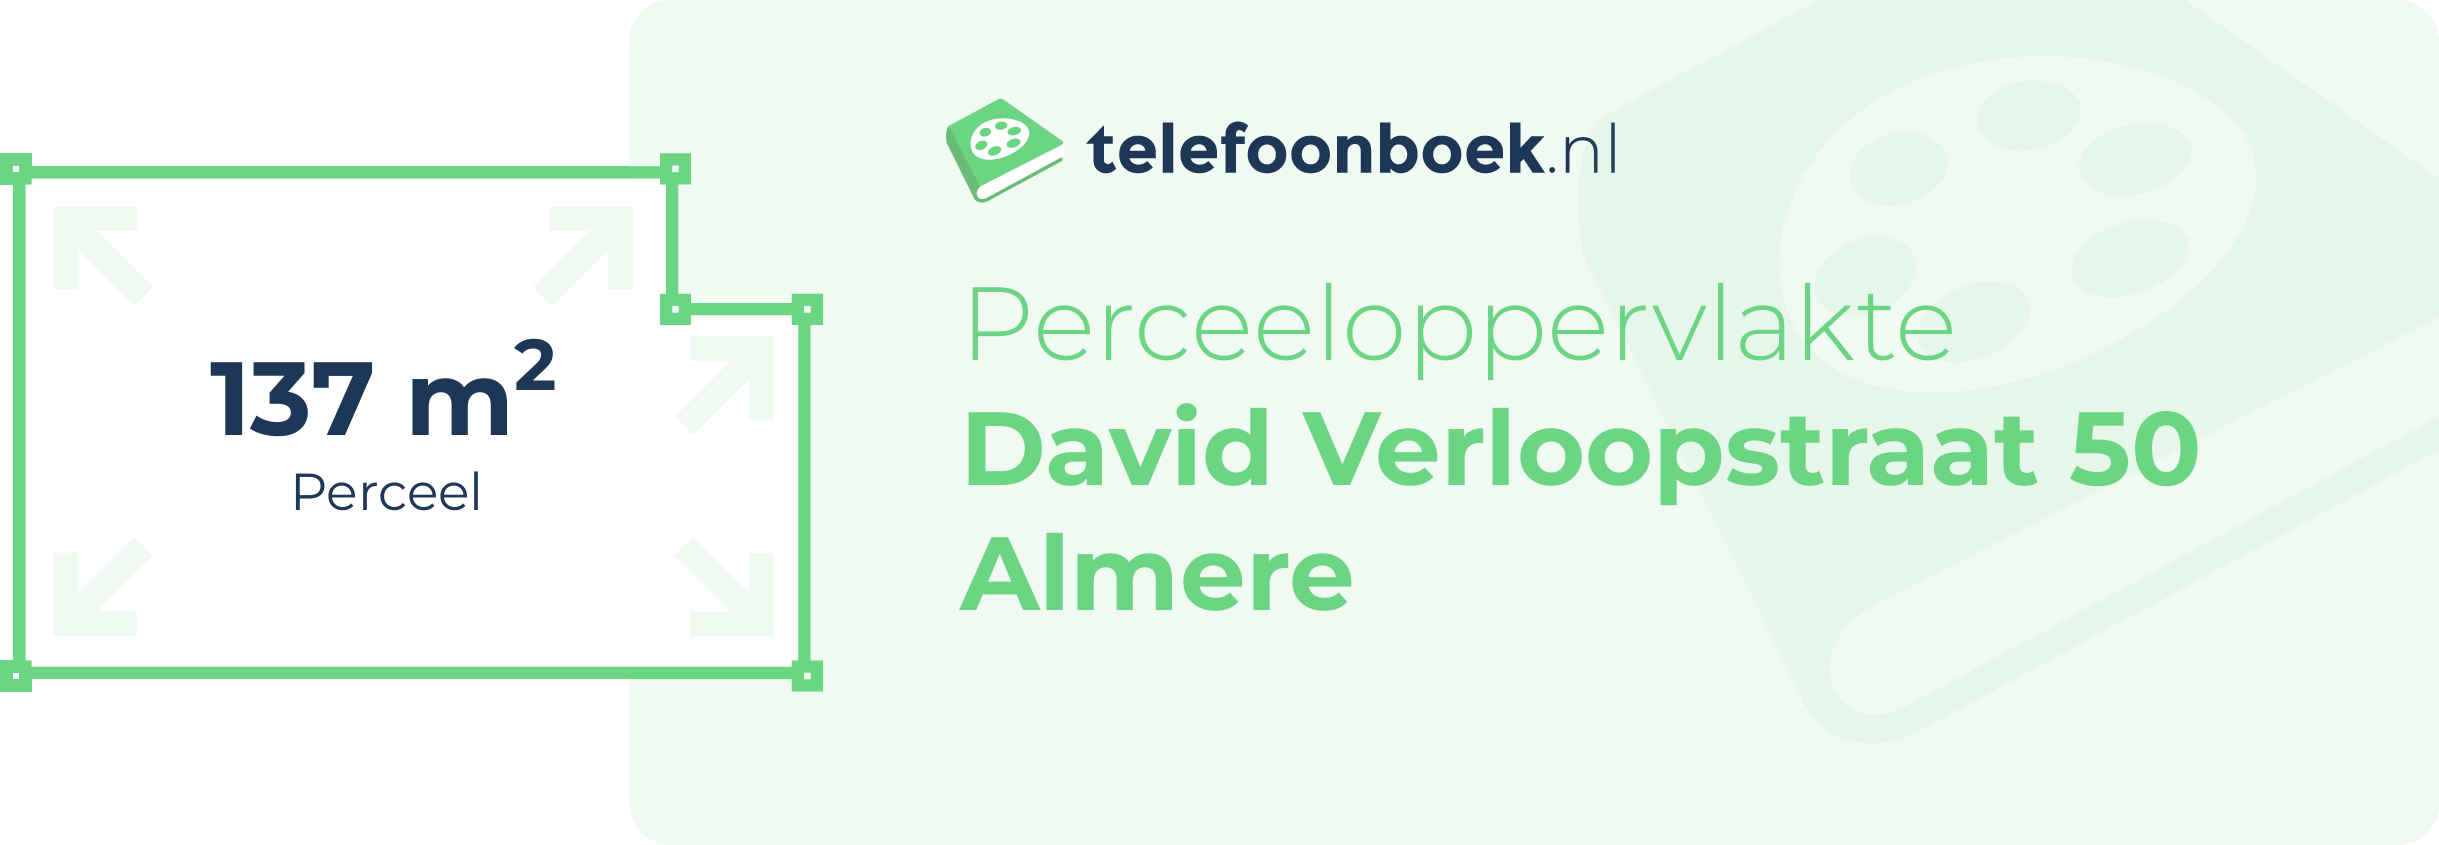 Perceeloppervlakte David Verloopstraat 50 Almere